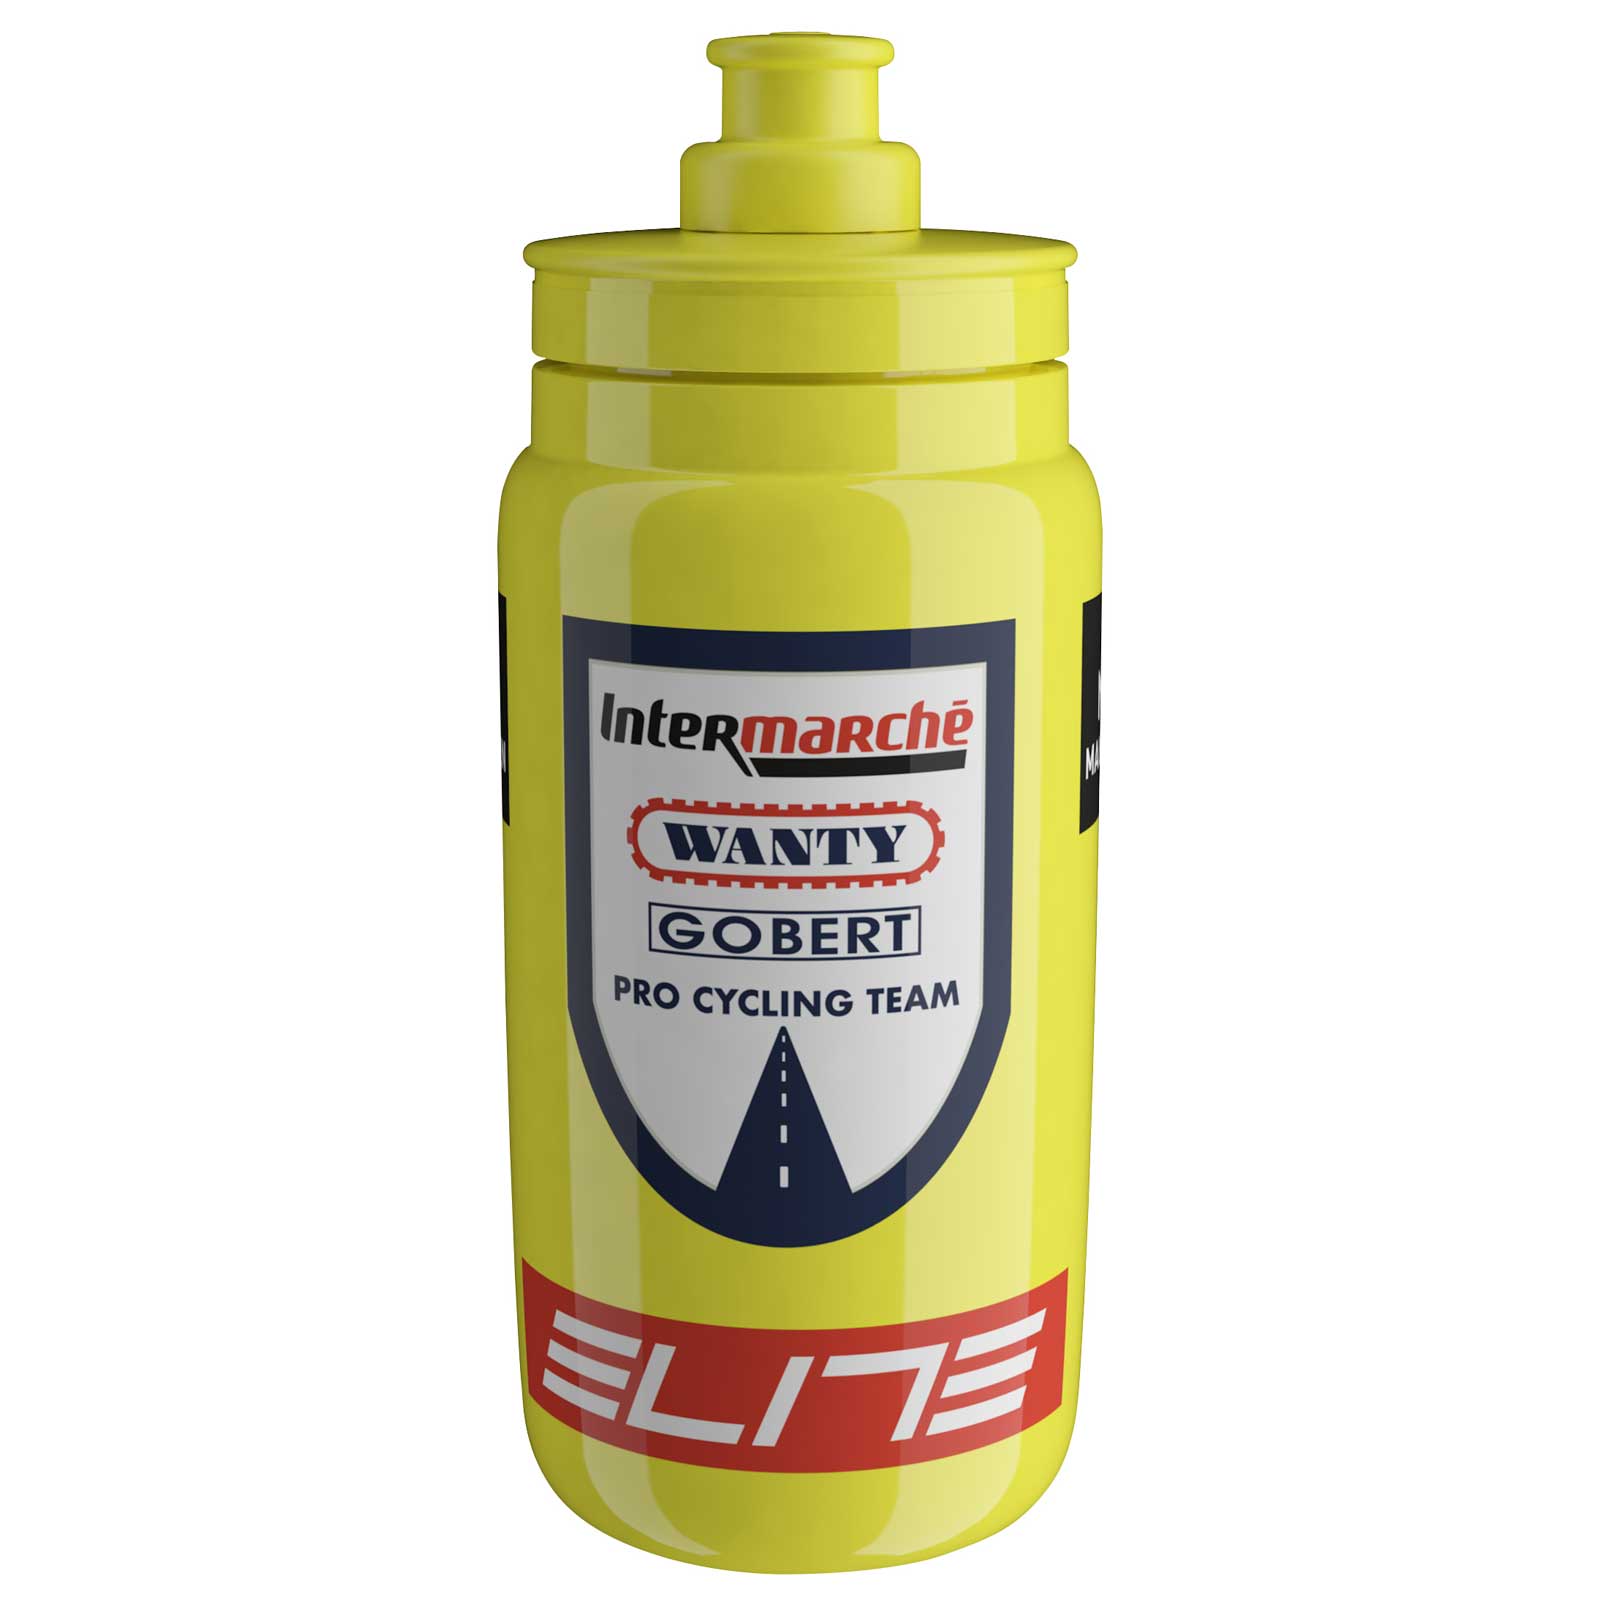 Produktbild von Elite Fly Team Trinkflasche - 550ml - Intermarché-Wanty-Gobert